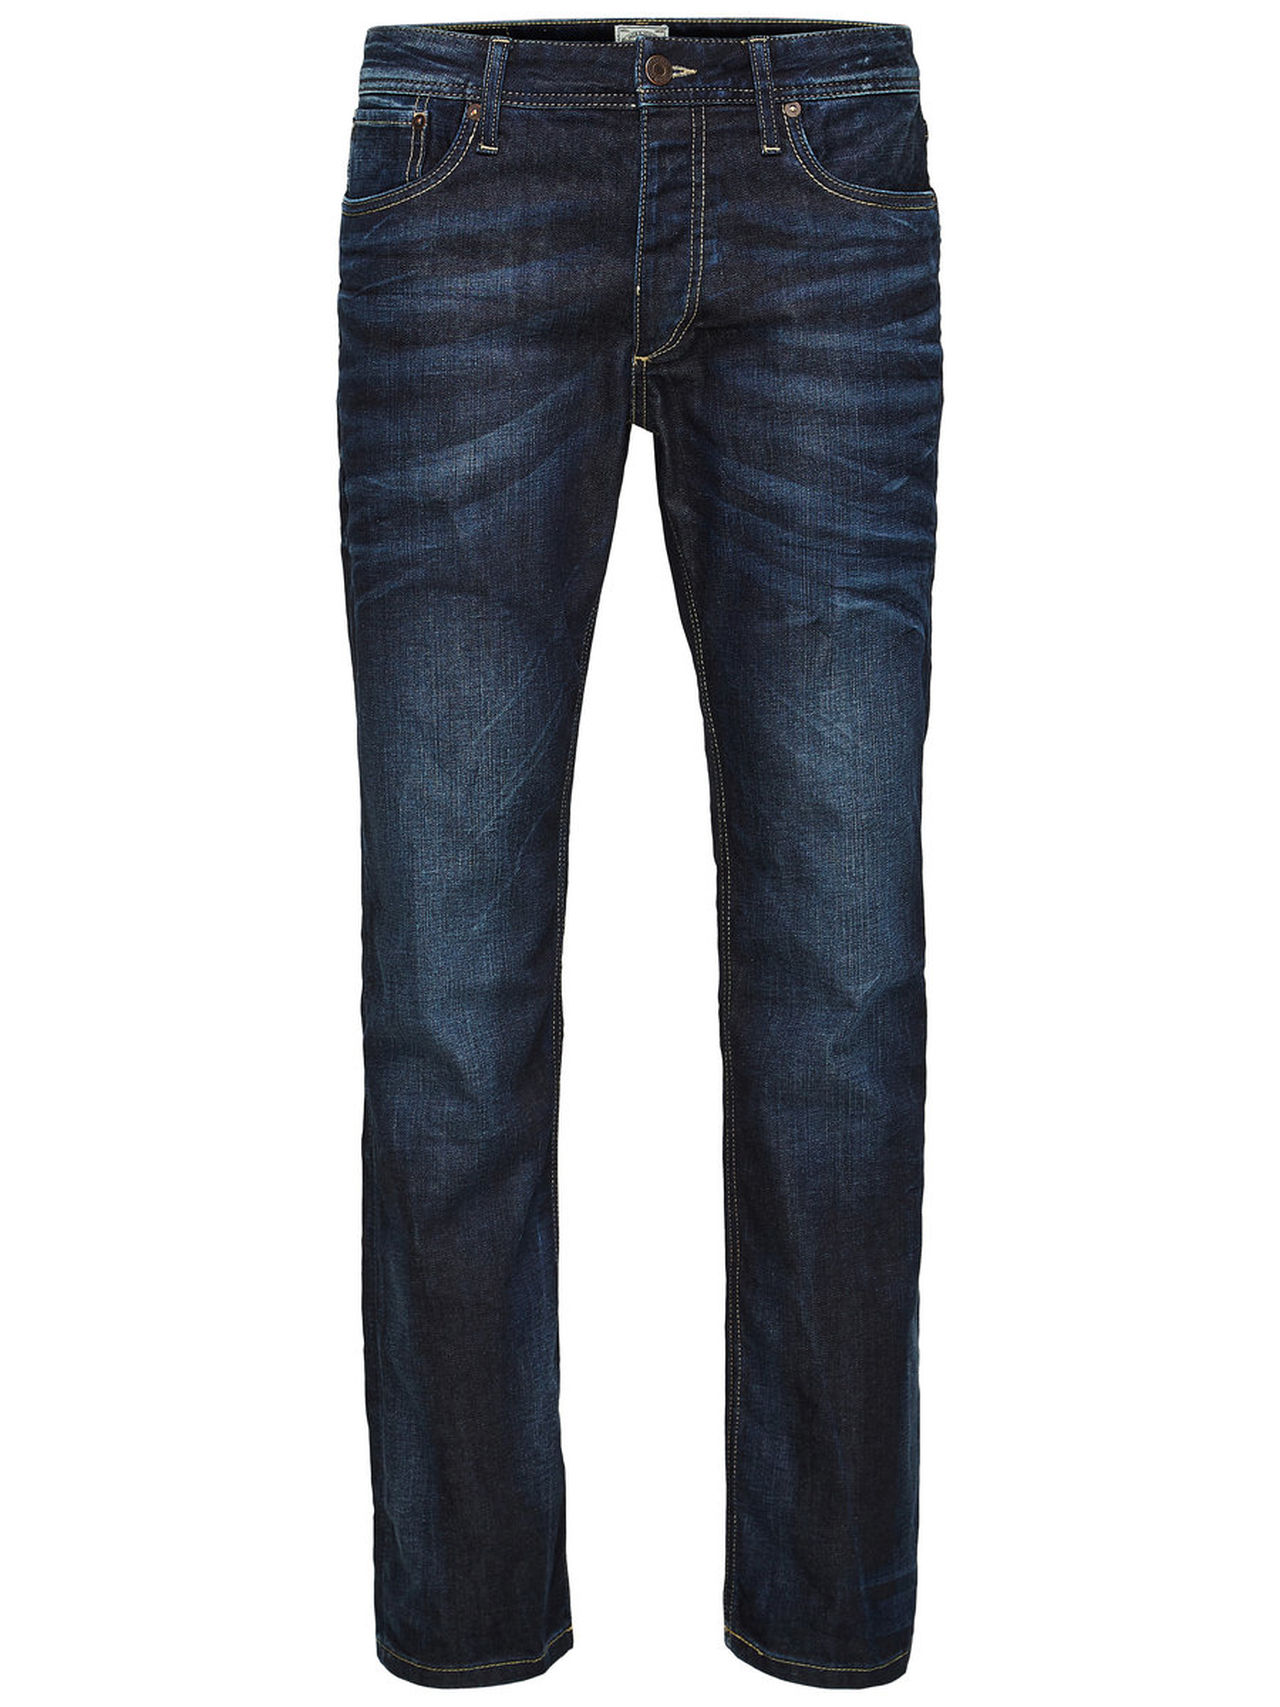 verzonden tekort hand Heren Regular Jeans Hotsell, SAVE 35% - fearthemecca.com